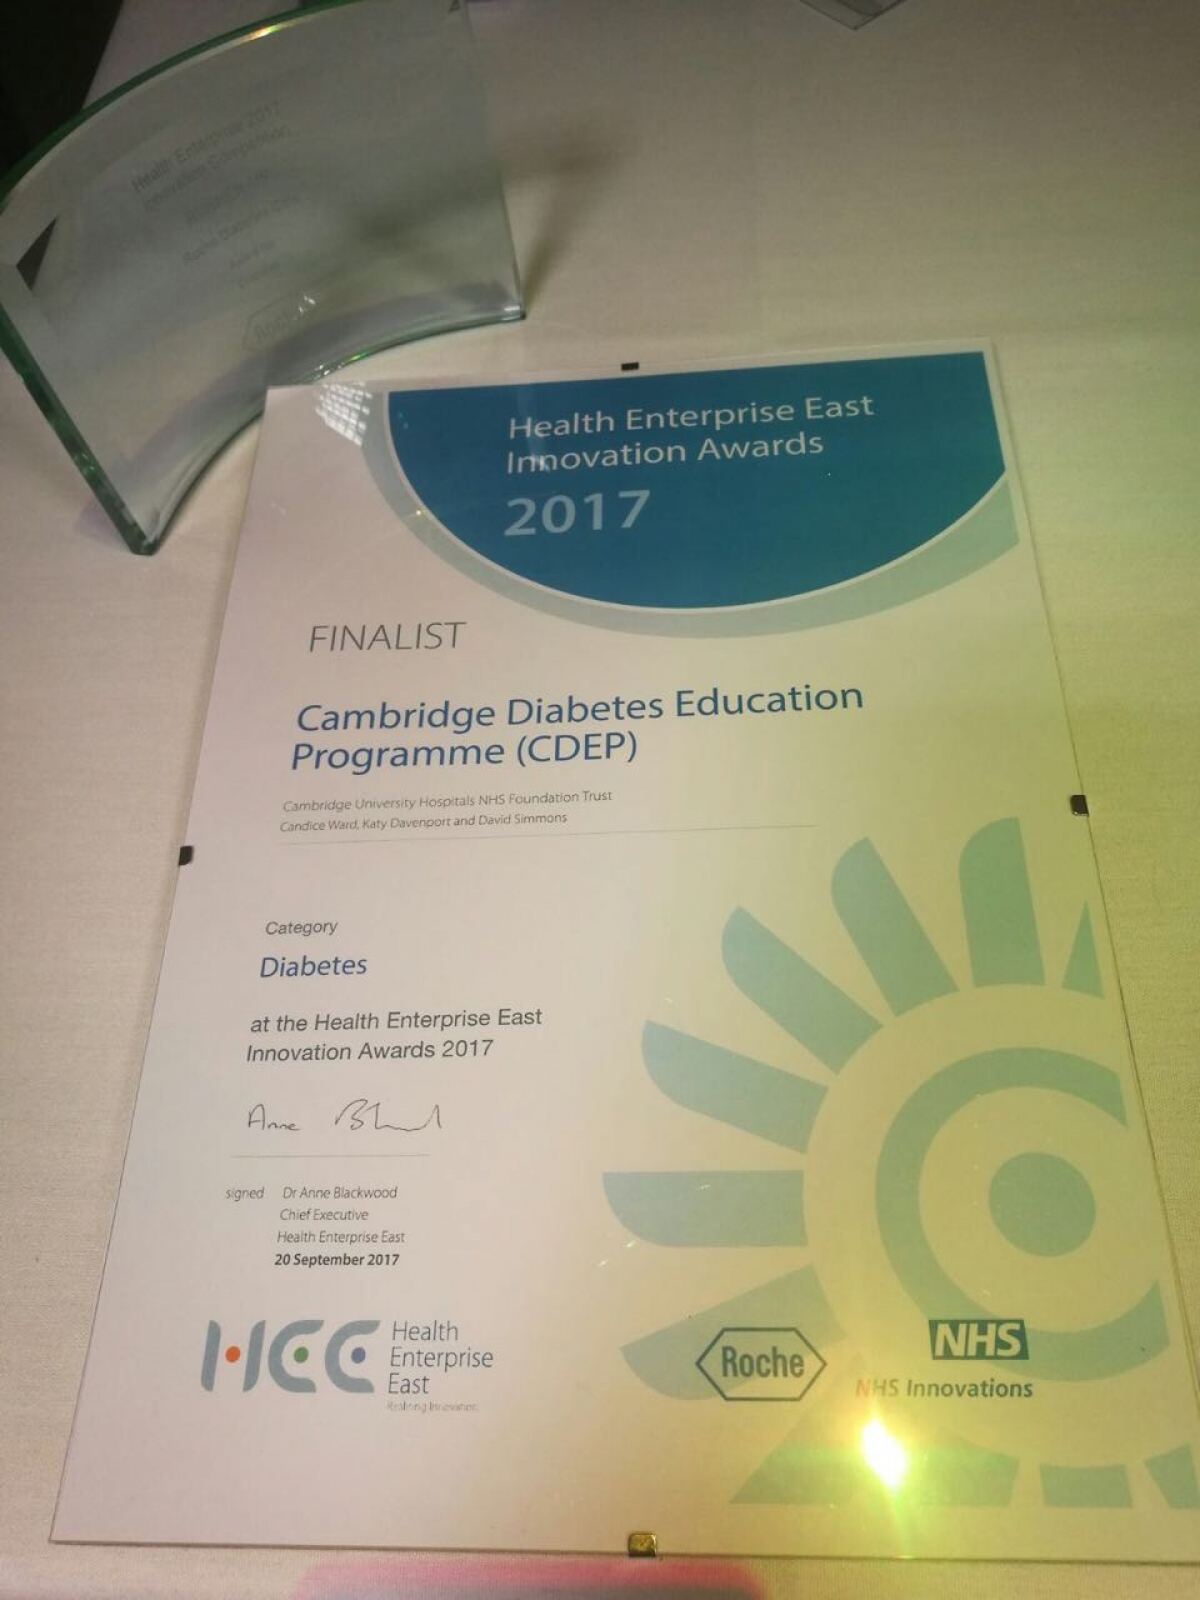 CDEP: 1st runner-up in the 2017 HEE Innovation Awards!